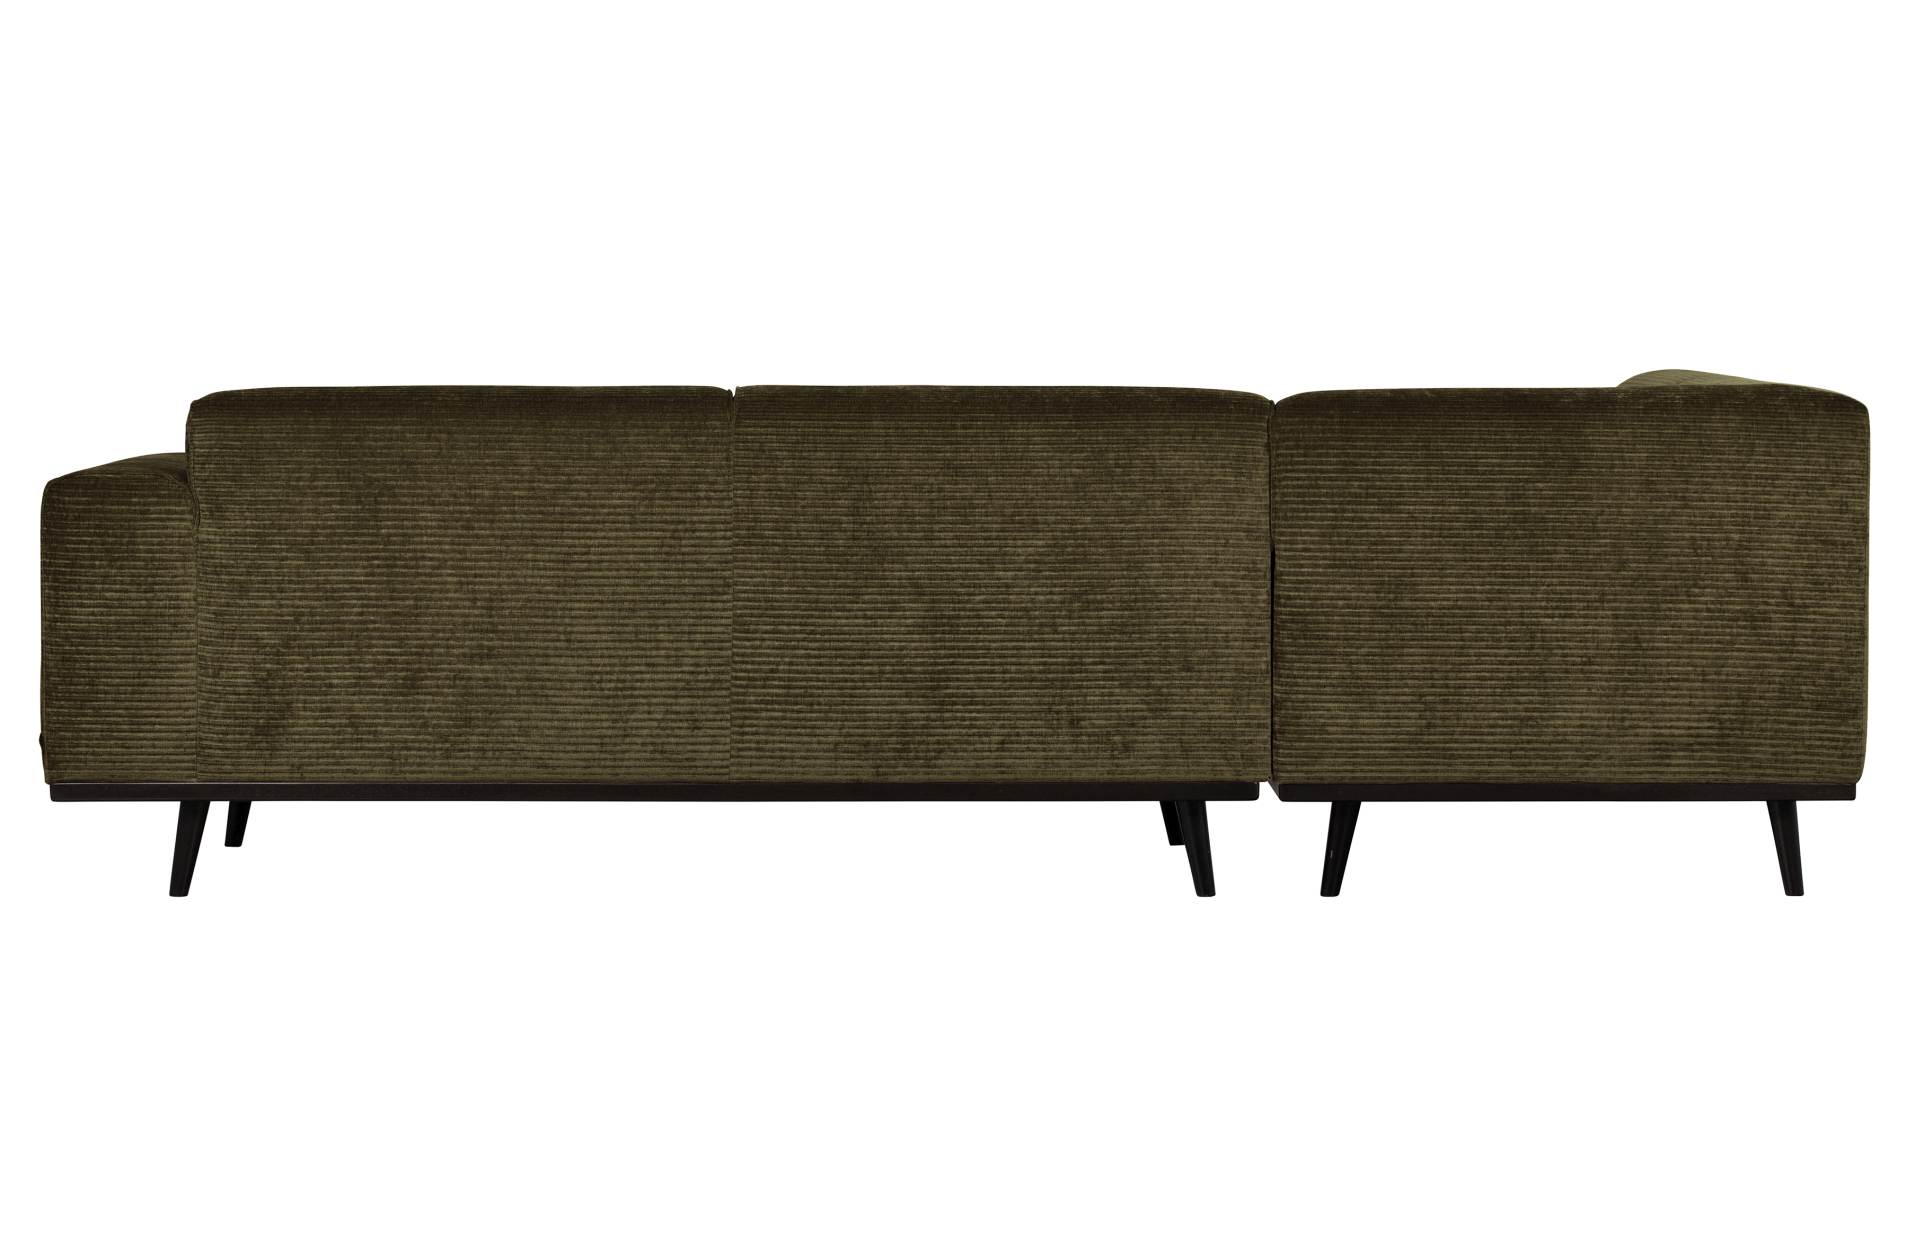 Das Ecksofa Statement überzeugt mit seinem modernen Design. Gefertigt wurde es aus gewebten Jacquard, welches einen Olive Farbton besitzen. Das Gestell ist aus Birkenholz und hat eine schwarze Farbe. Das Sofa hat eine Breite von 274 cm.